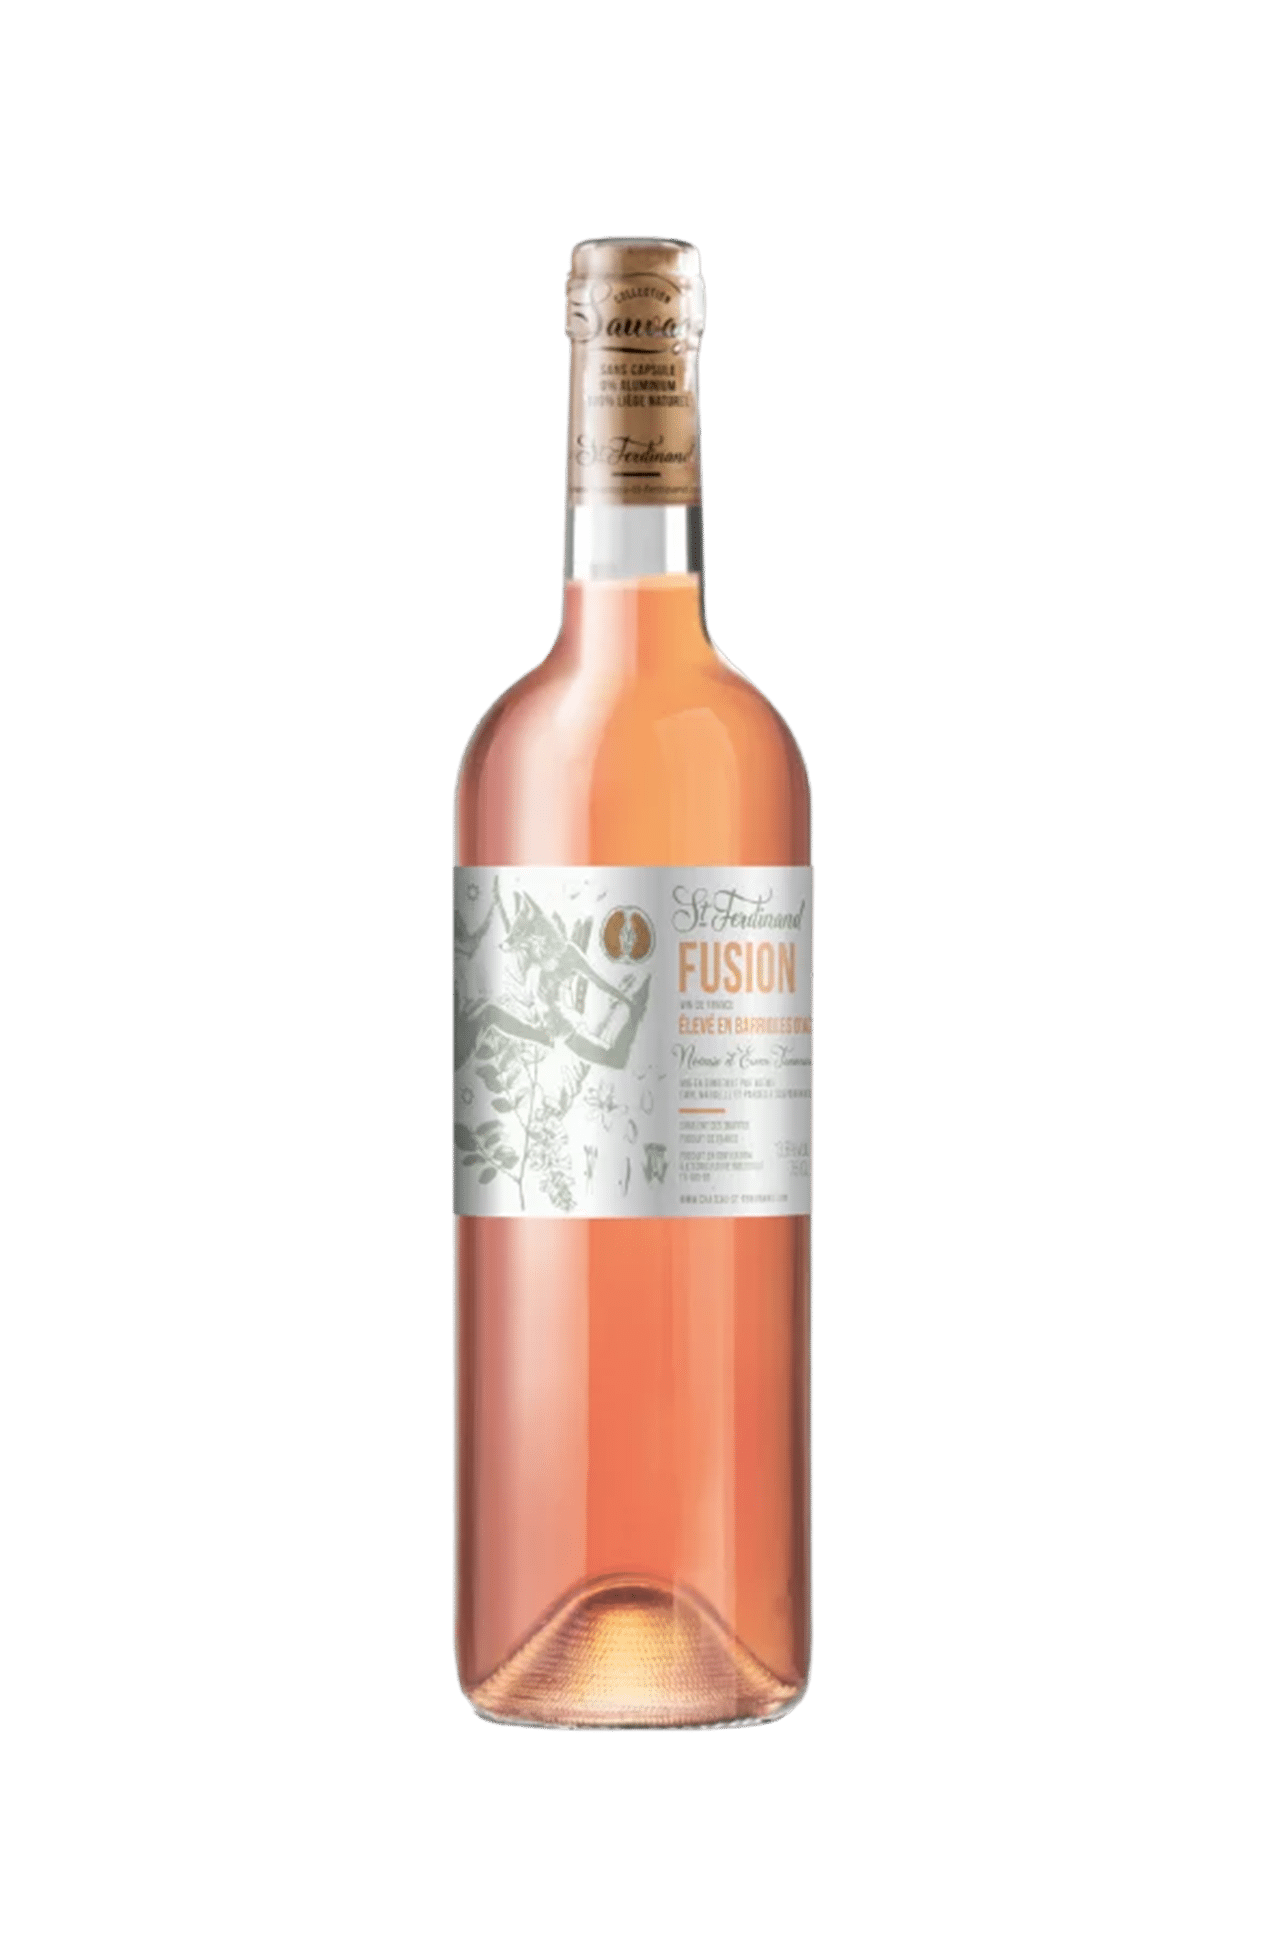 Bouteille de vin rosé chateau saint ferdinand cuvée fusion